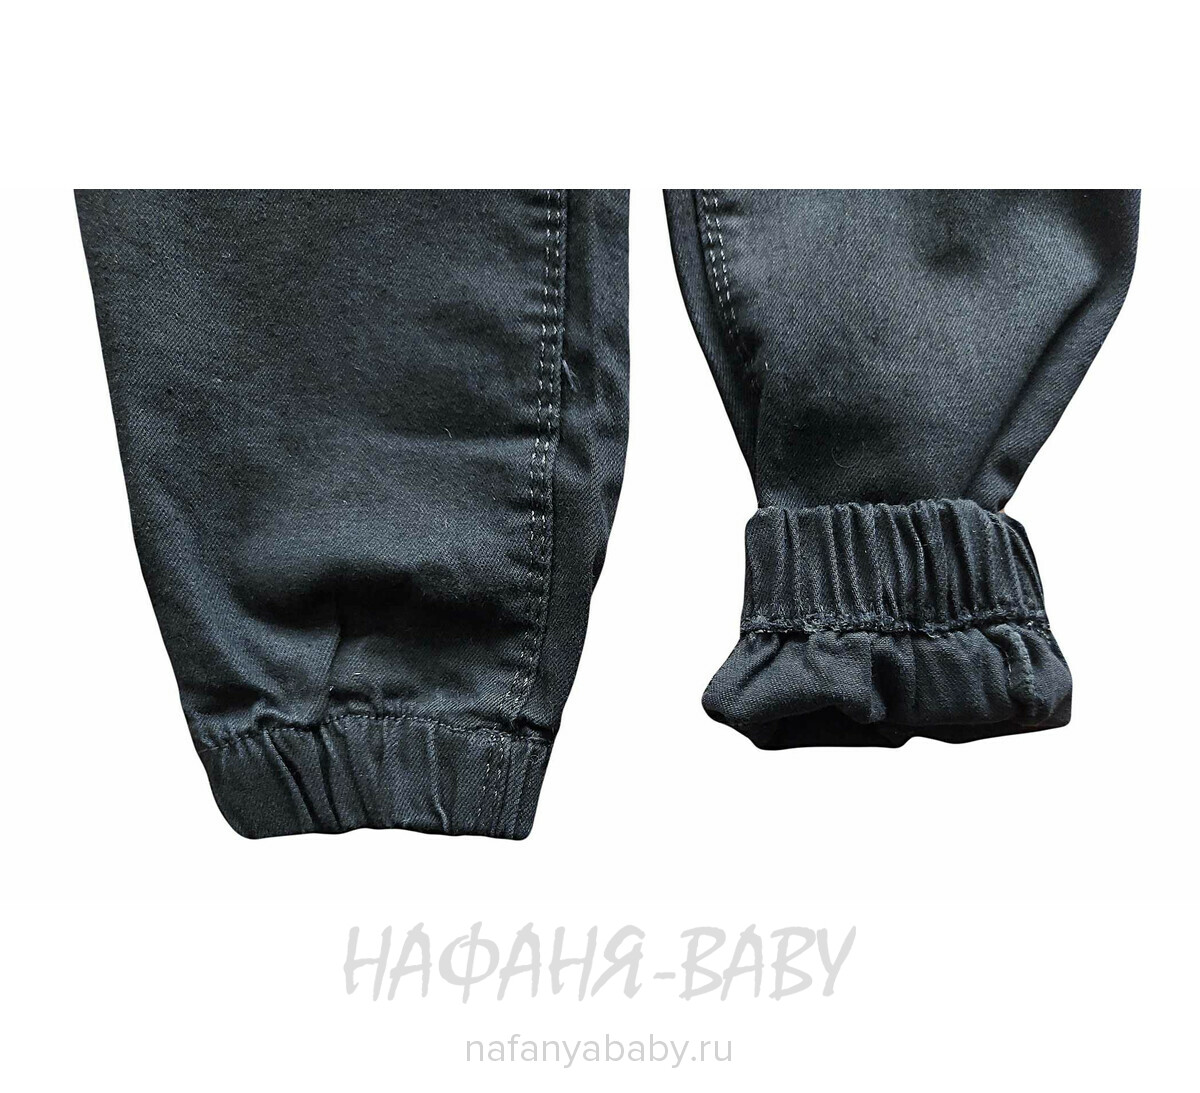 Джинсы детские ELEYSA Jeans арт:  6100 для девочки 3-7 лет, цвет черный, оптом Турция